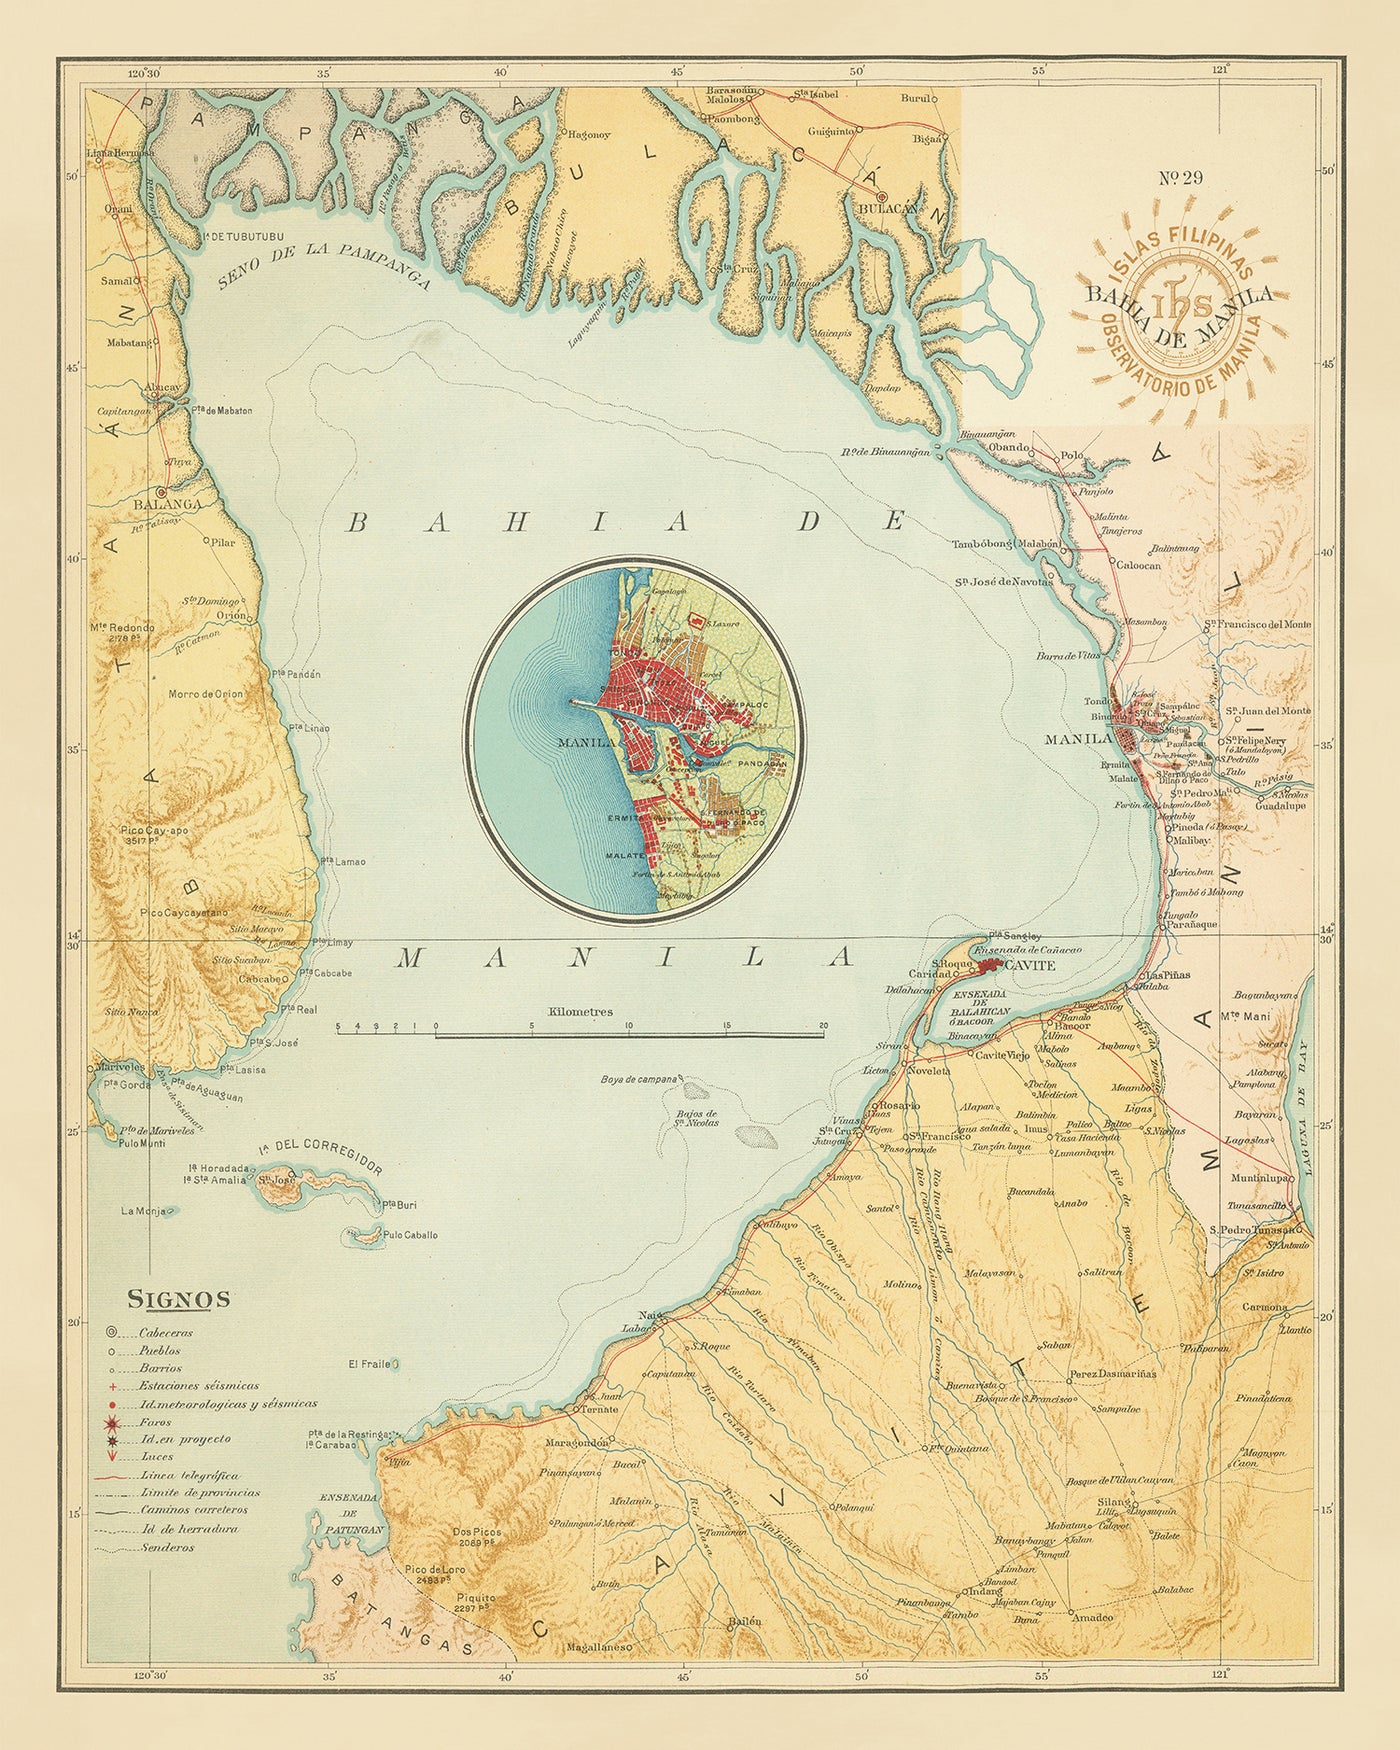 Alte Karte der Bucht von Manila von Hoen & Co, 1899: Cavite, Corregidor, Manila, Pasig River, spanischer Kolonialismus